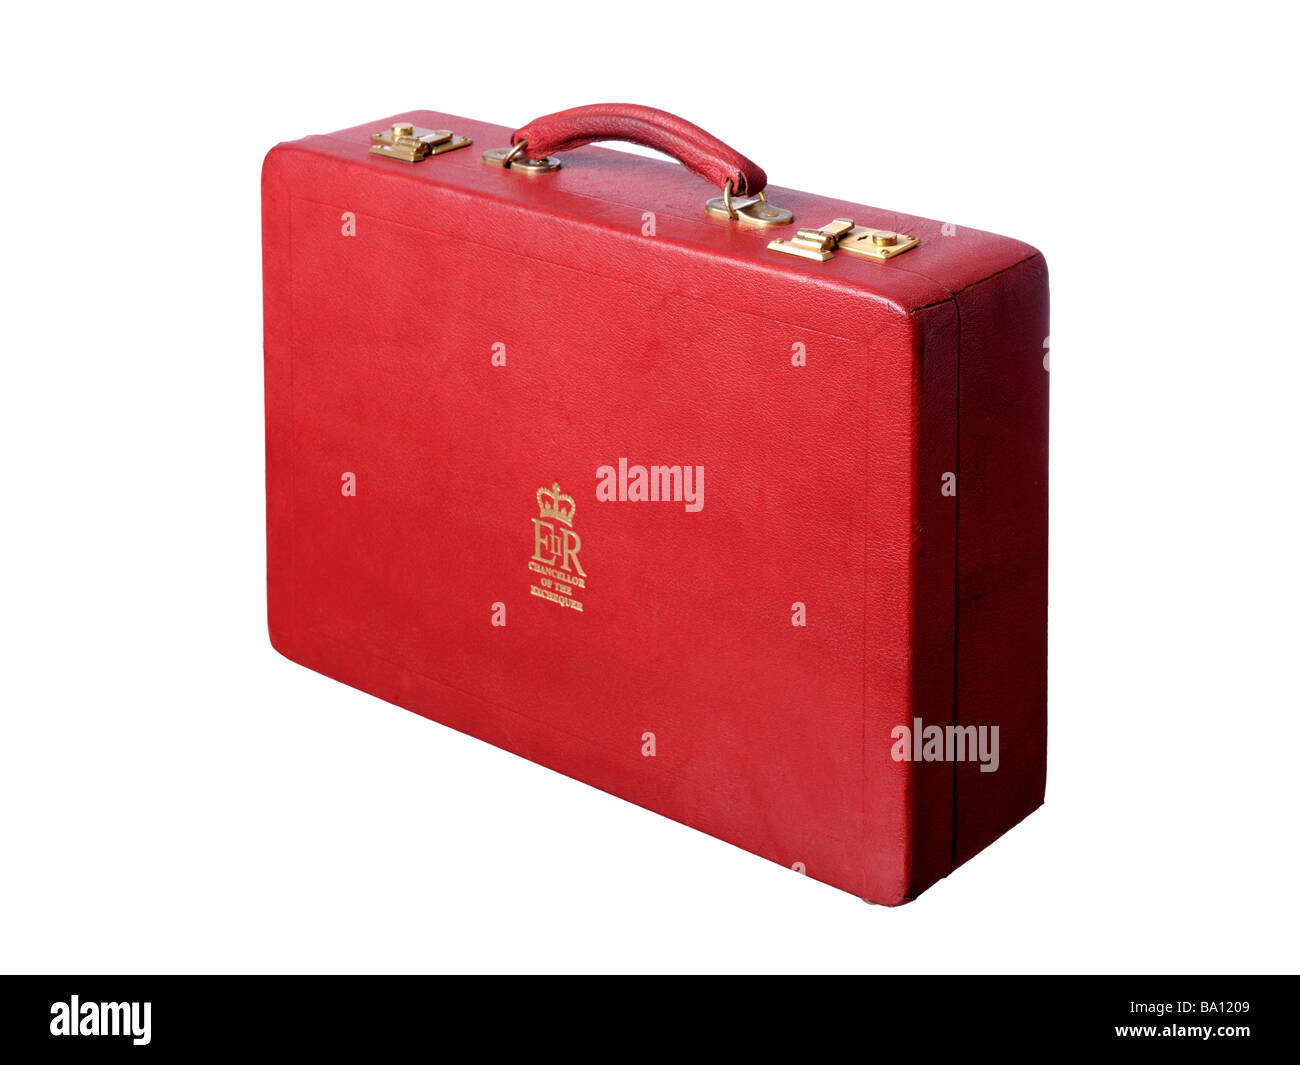 Presupuesto Roja británica maletín emblema EIIR Canciller del Exchequer Foto de stock